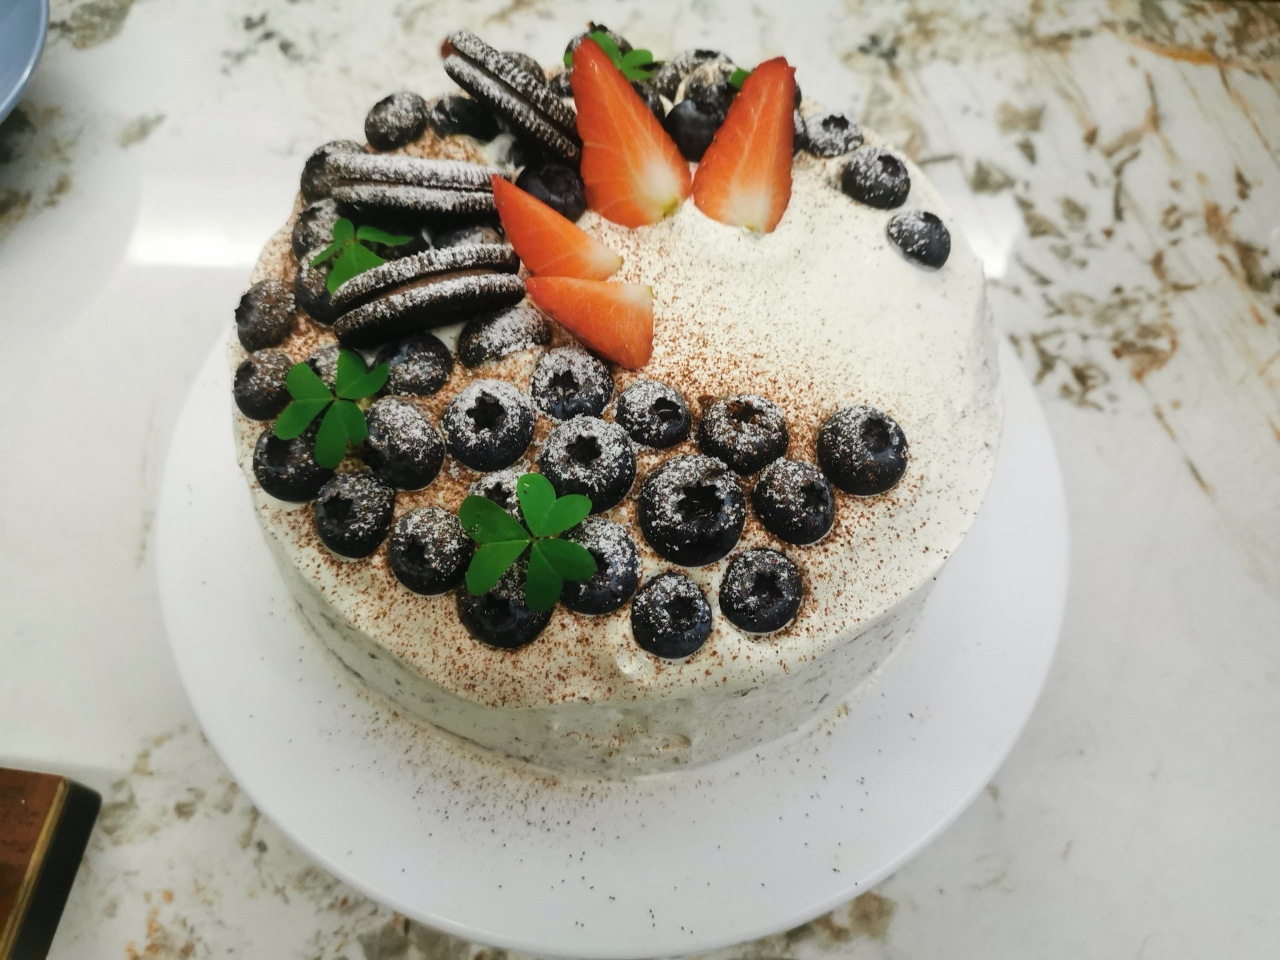 蓝莓奥利奥生日蛋糕